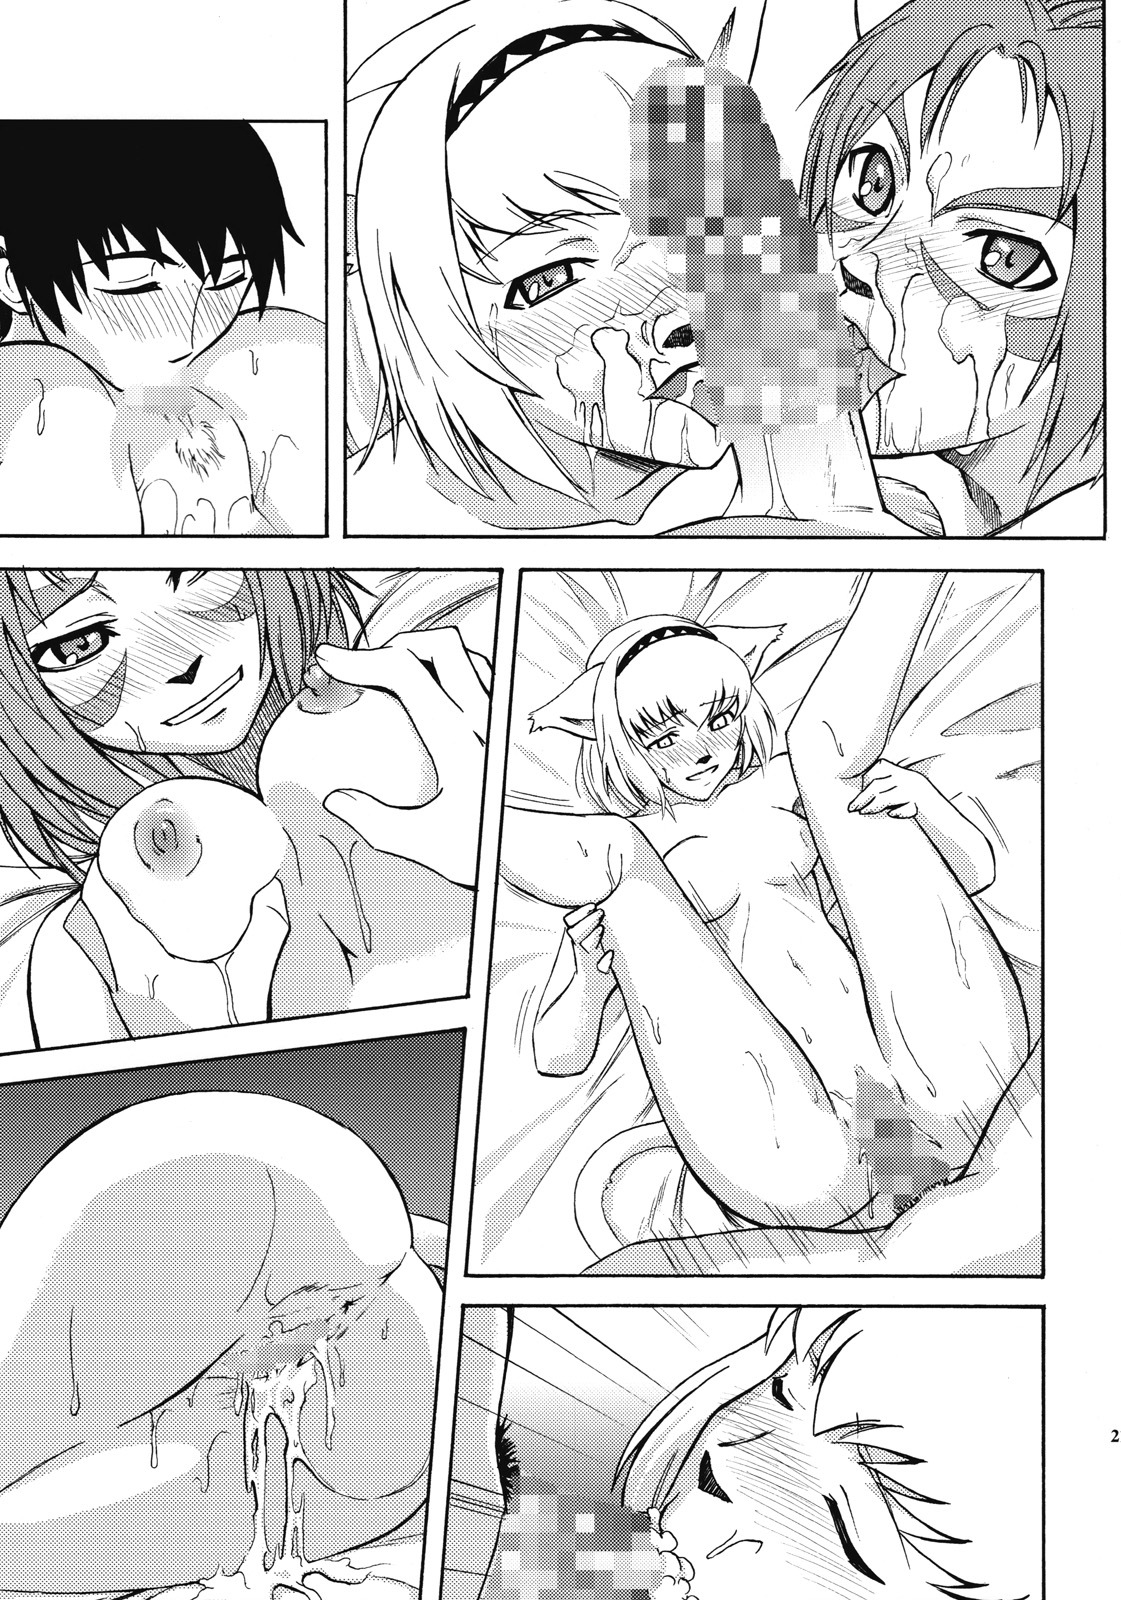 [ARCHENEMY (Kasumi Ryo)] Ein Joghurt wie ein Honig-Dessert. EXTENDED EDITION (Final Fantasy XI) page 20 full